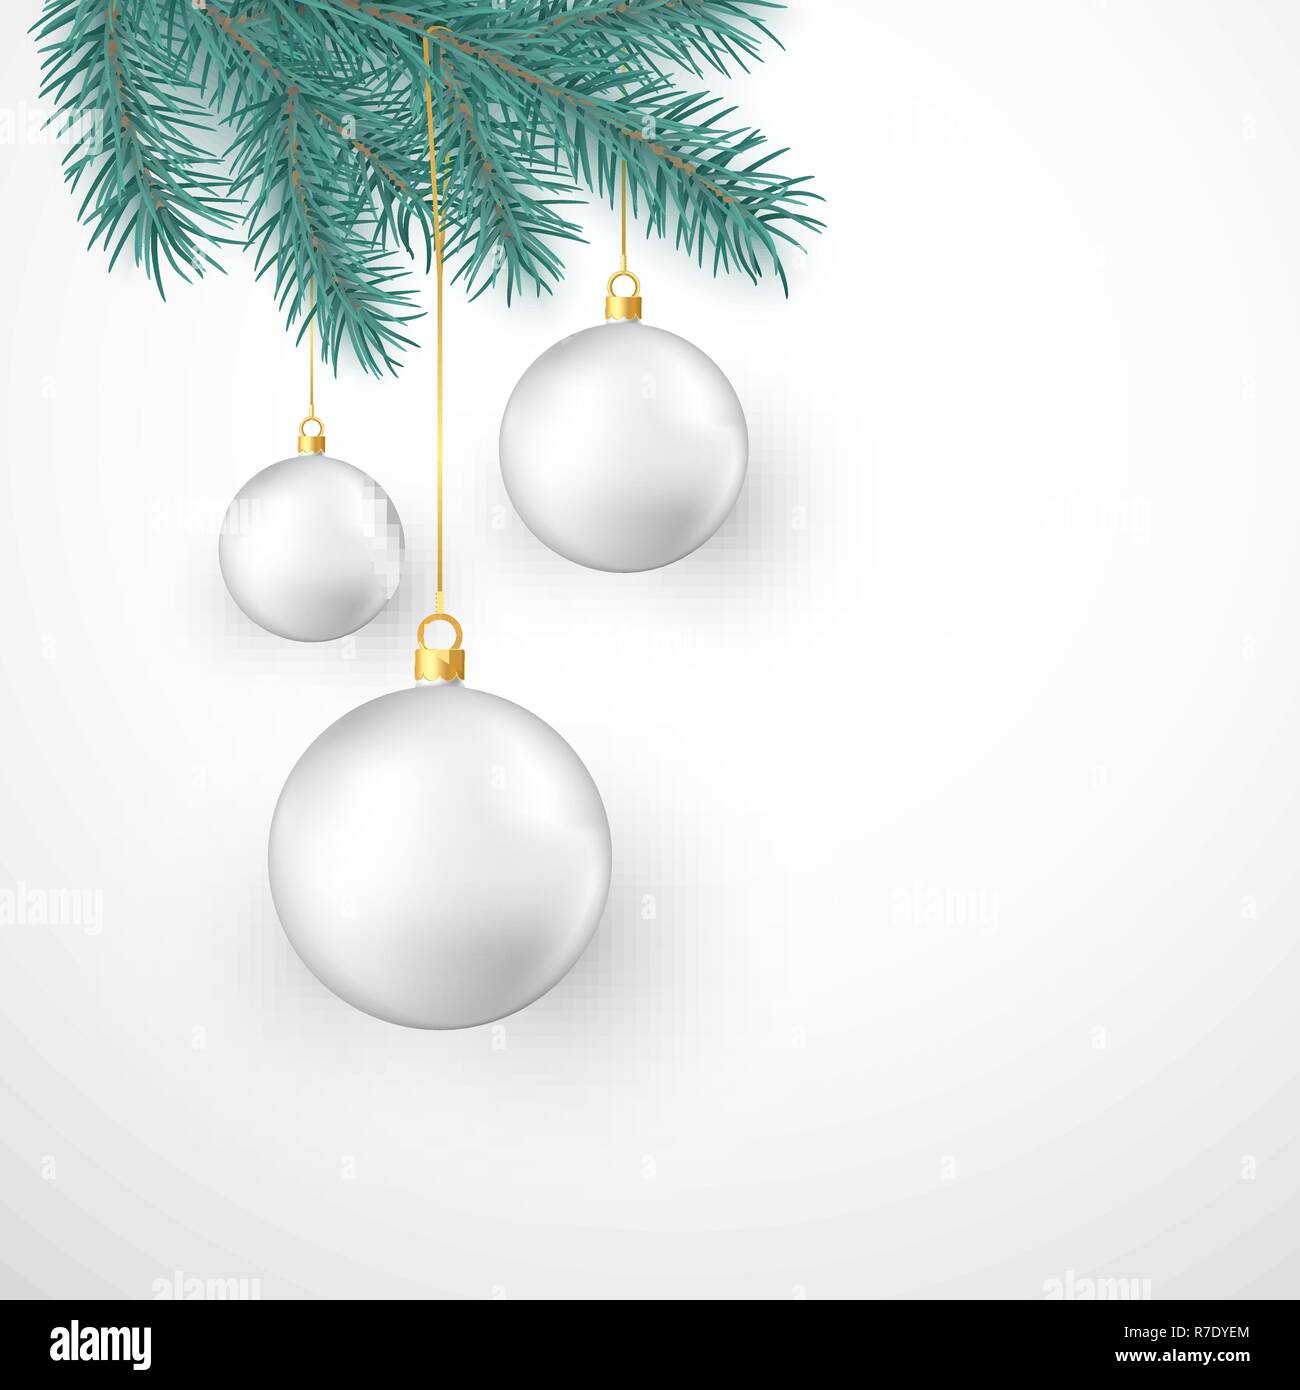 Weiße Weihnachten Kugeln hängen an Tanne Zweig. Winter Urlaub Dekoration Element. Vector Illustration auf weißem Hintergrund Stock Vektor